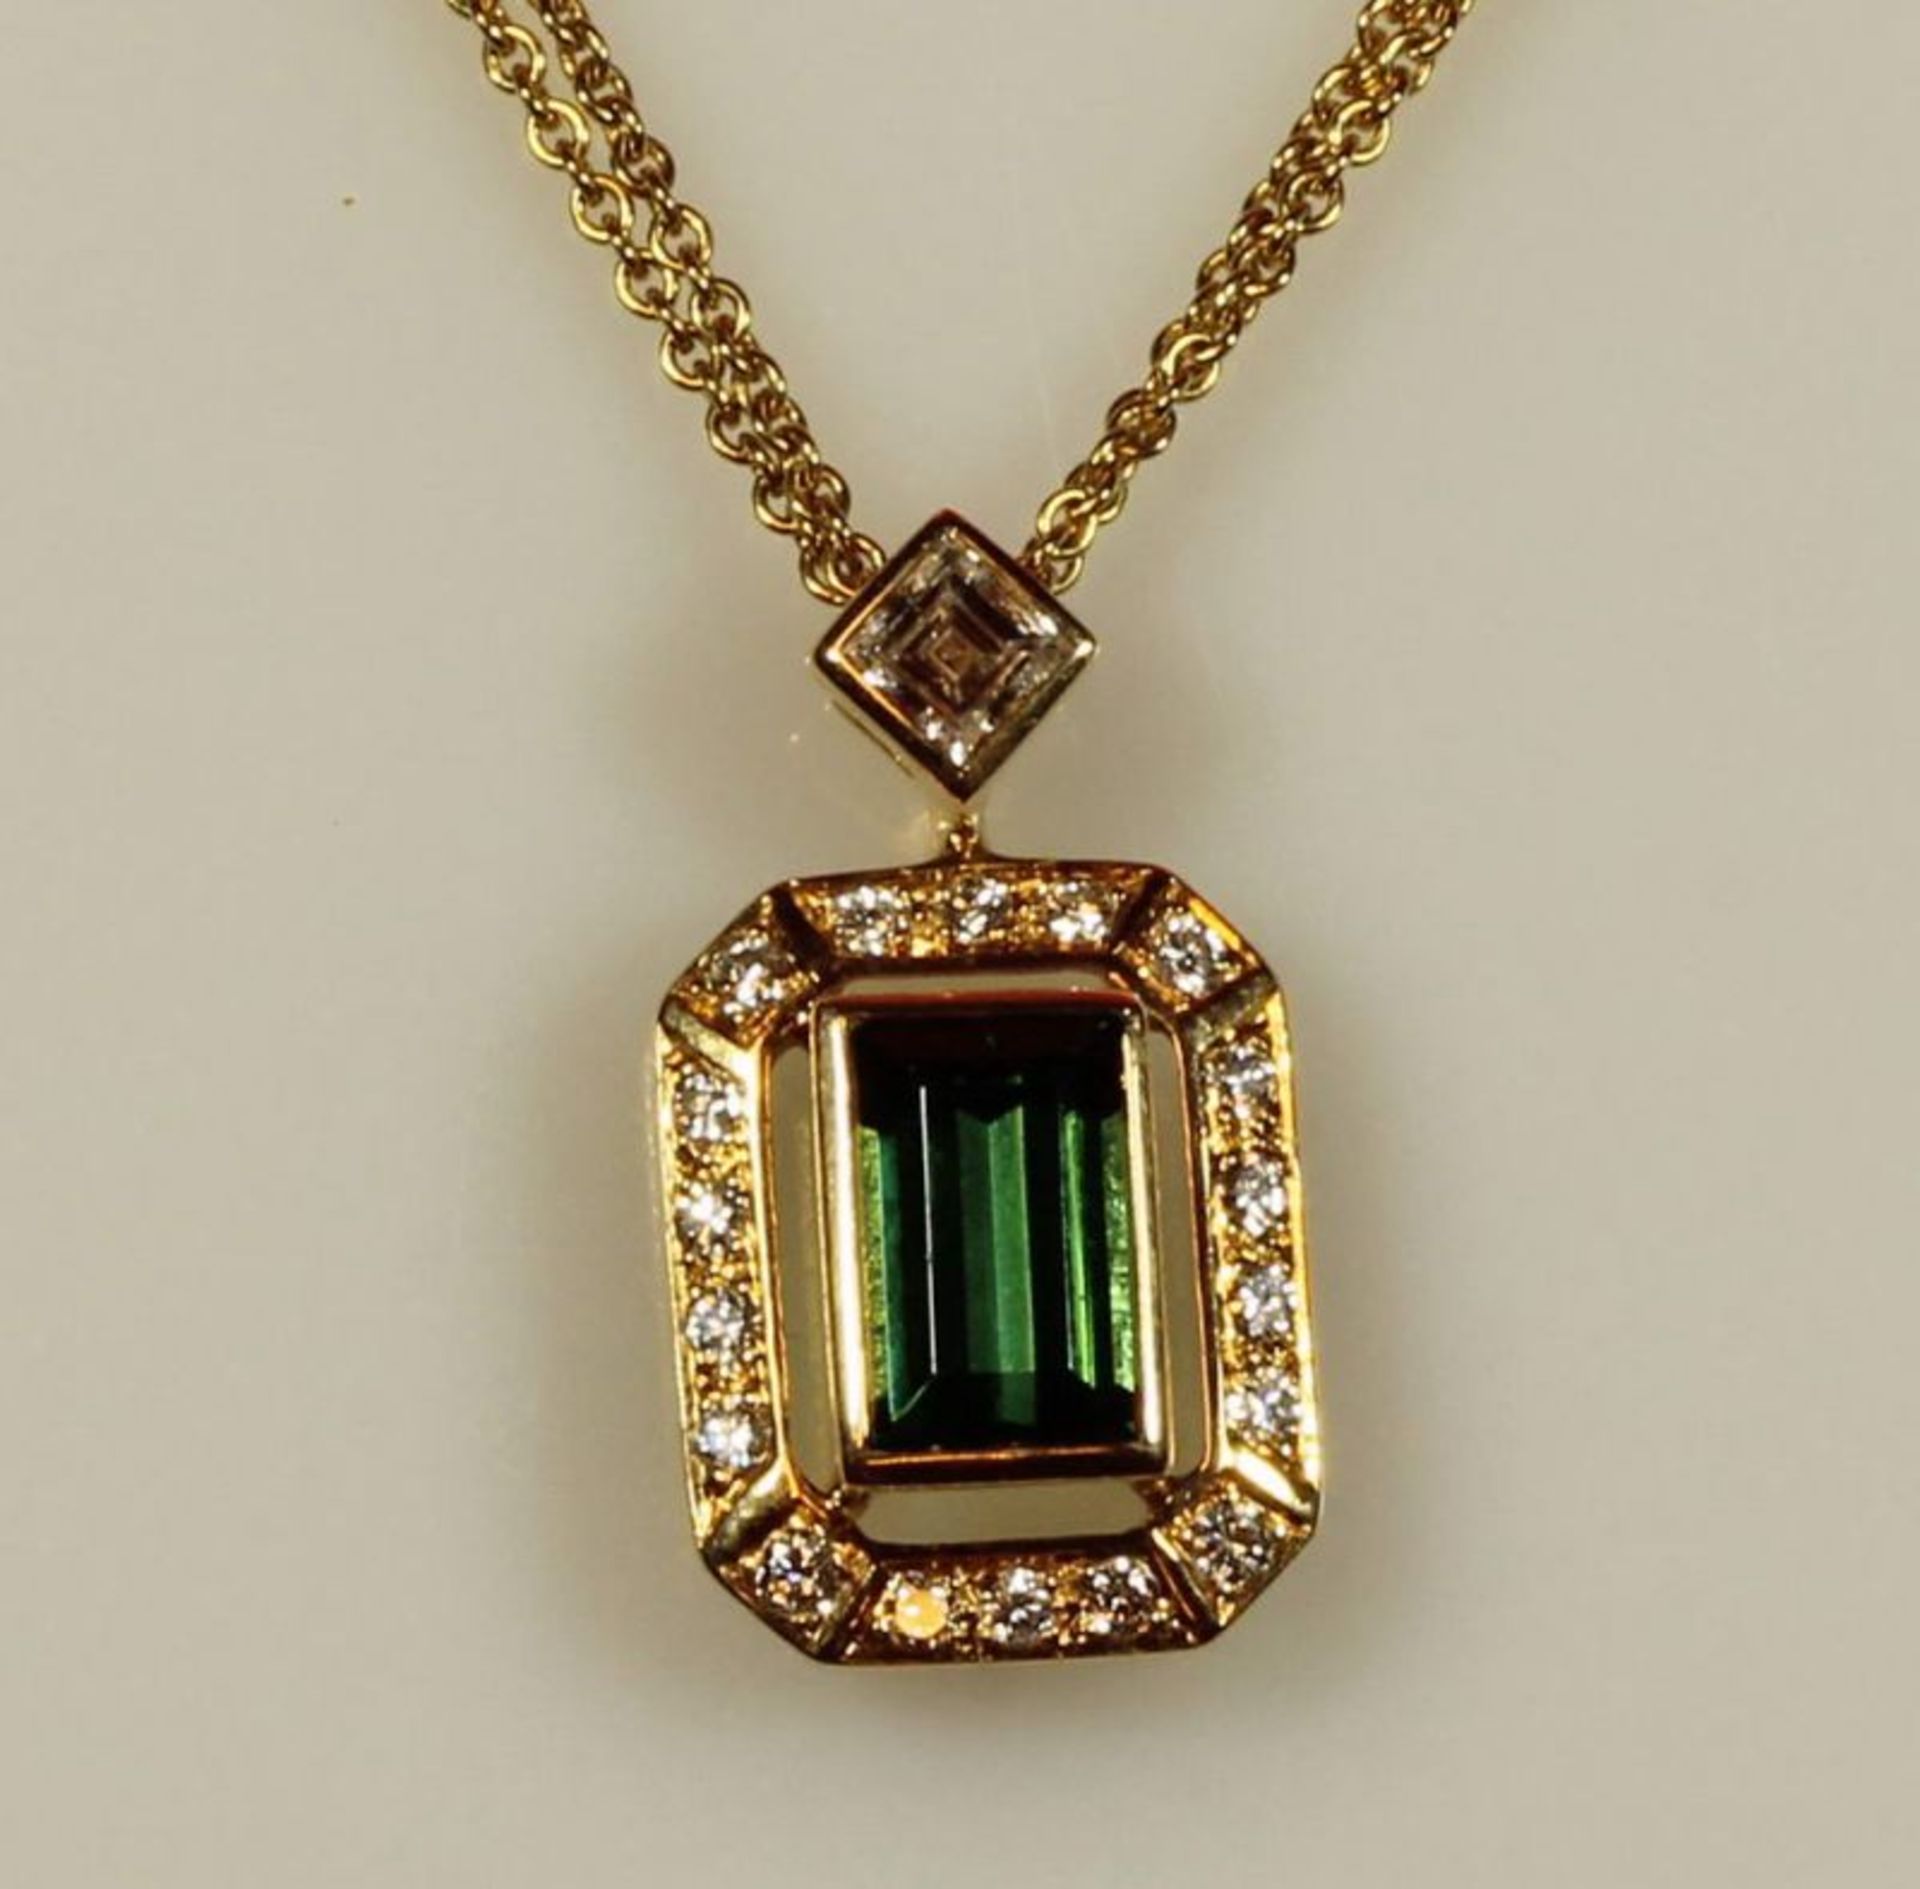 Collieranhänger, GG 750, 1 grüner Turmalin ca. 1.30 ct., im Baguettschliff, 1 Diamantcarrée, ca. 0.